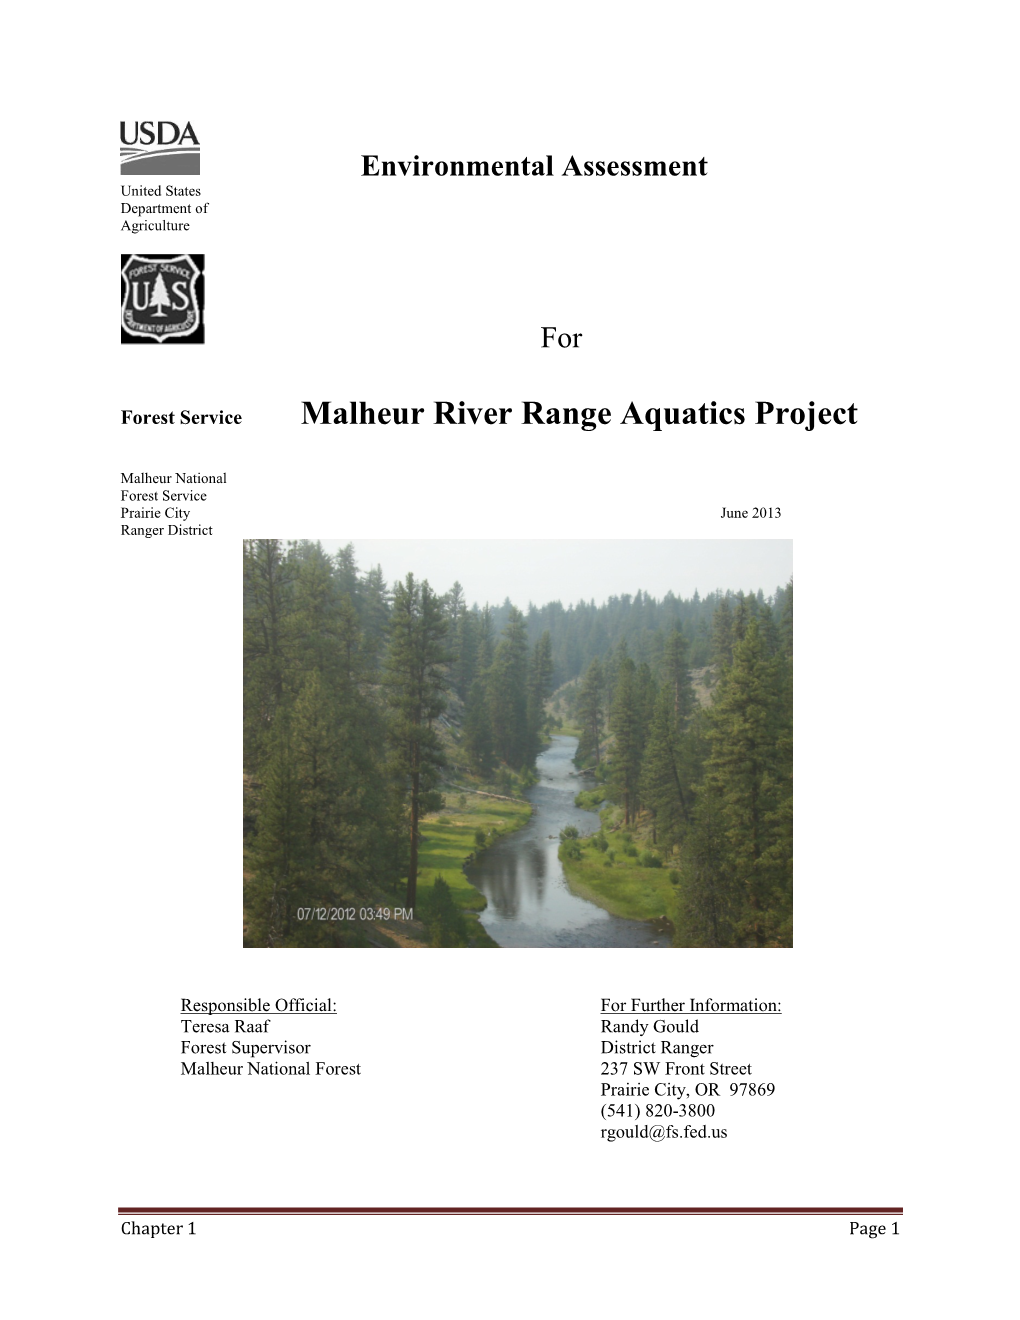 Malheur River Range Aquatics Project